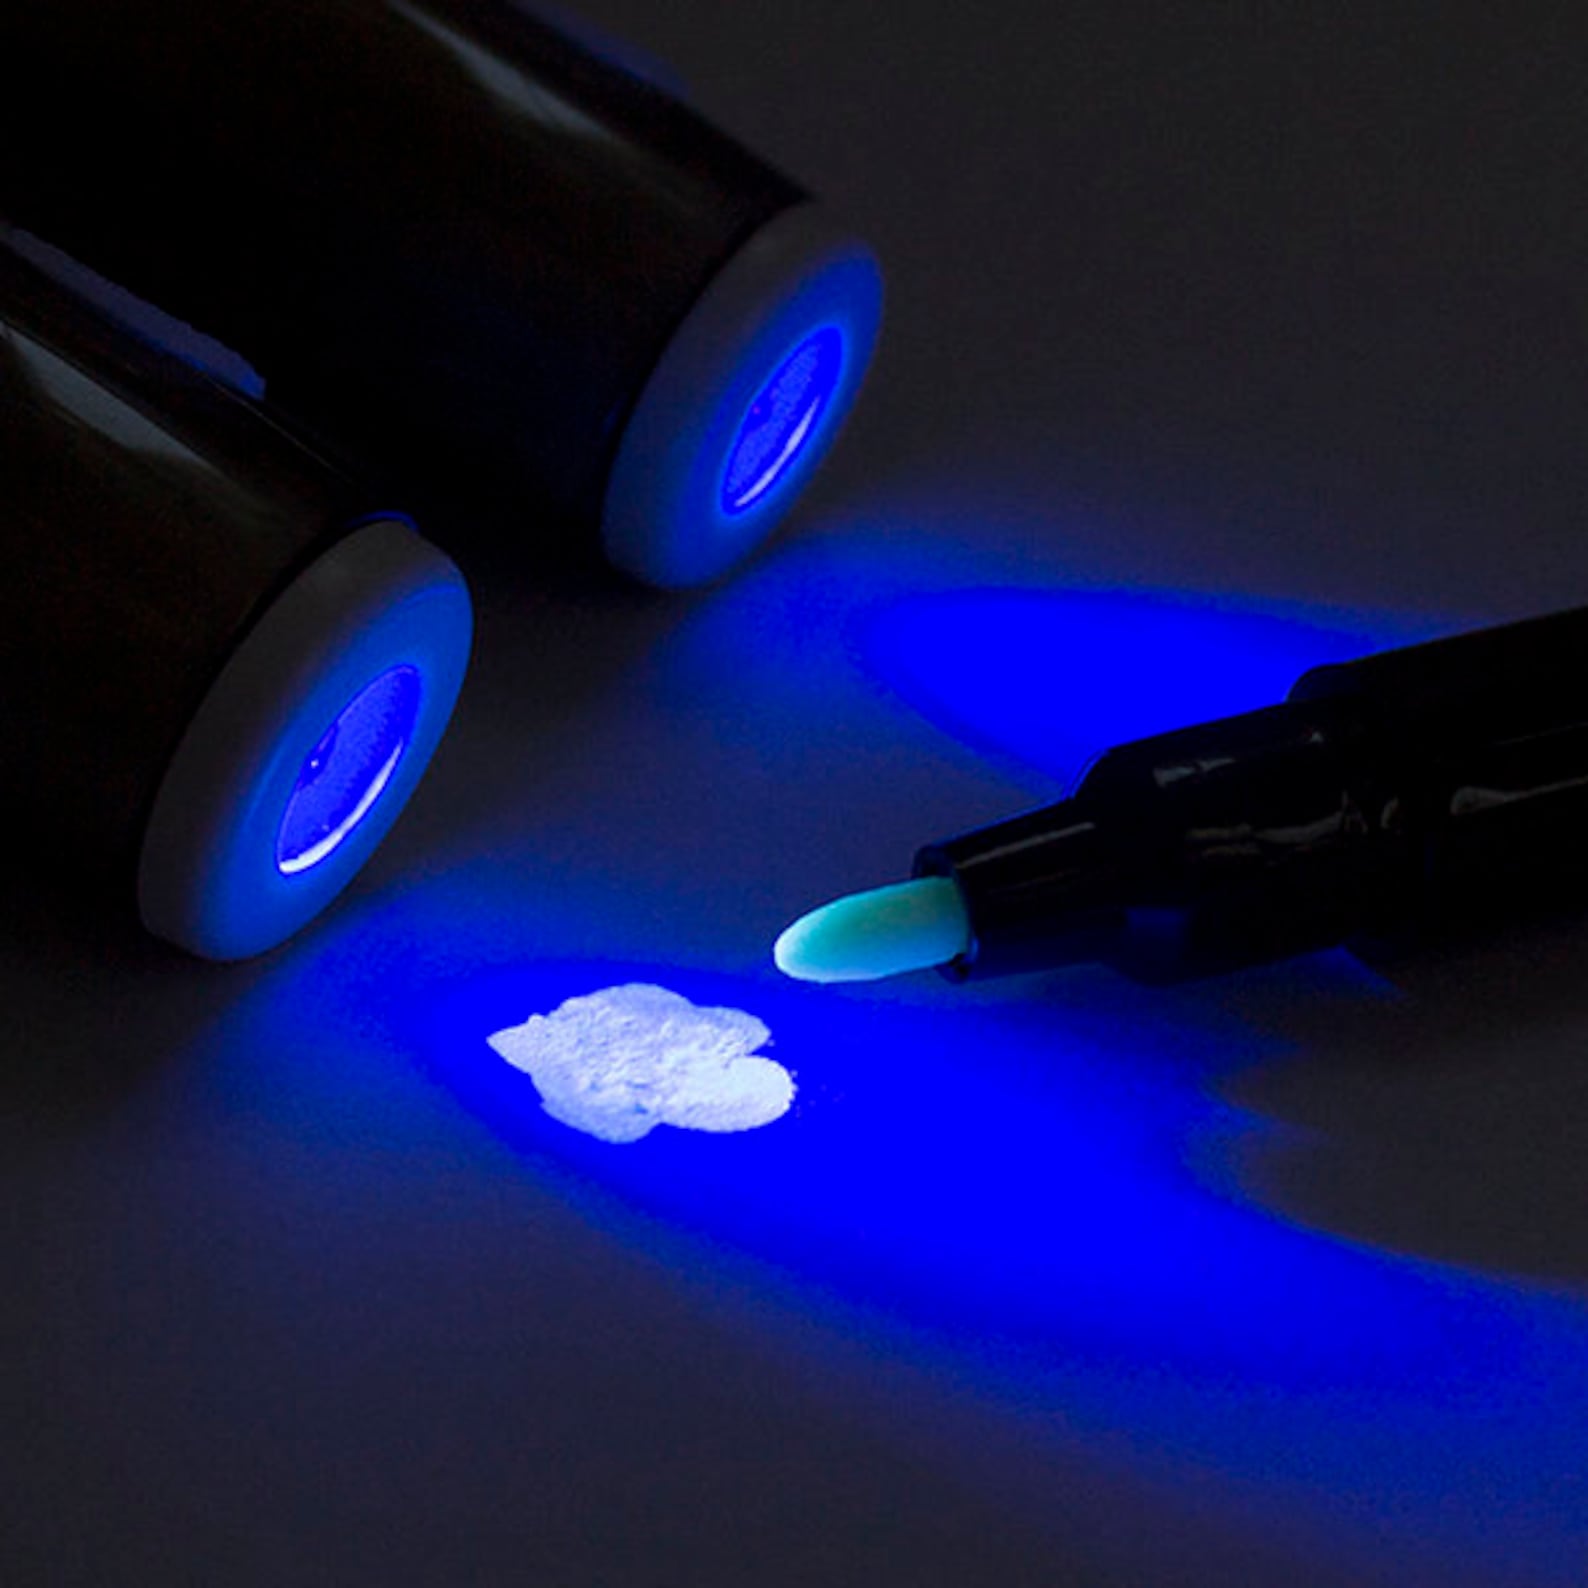 Уф мс. Невидимый ультрафиолетовый маркер. Фломастер с ультрафиолетовым фонариком. Ручка с невидимыми чернилами и ультрафиолетовым фонариком. Невидимый маркер для ультрафиолета.